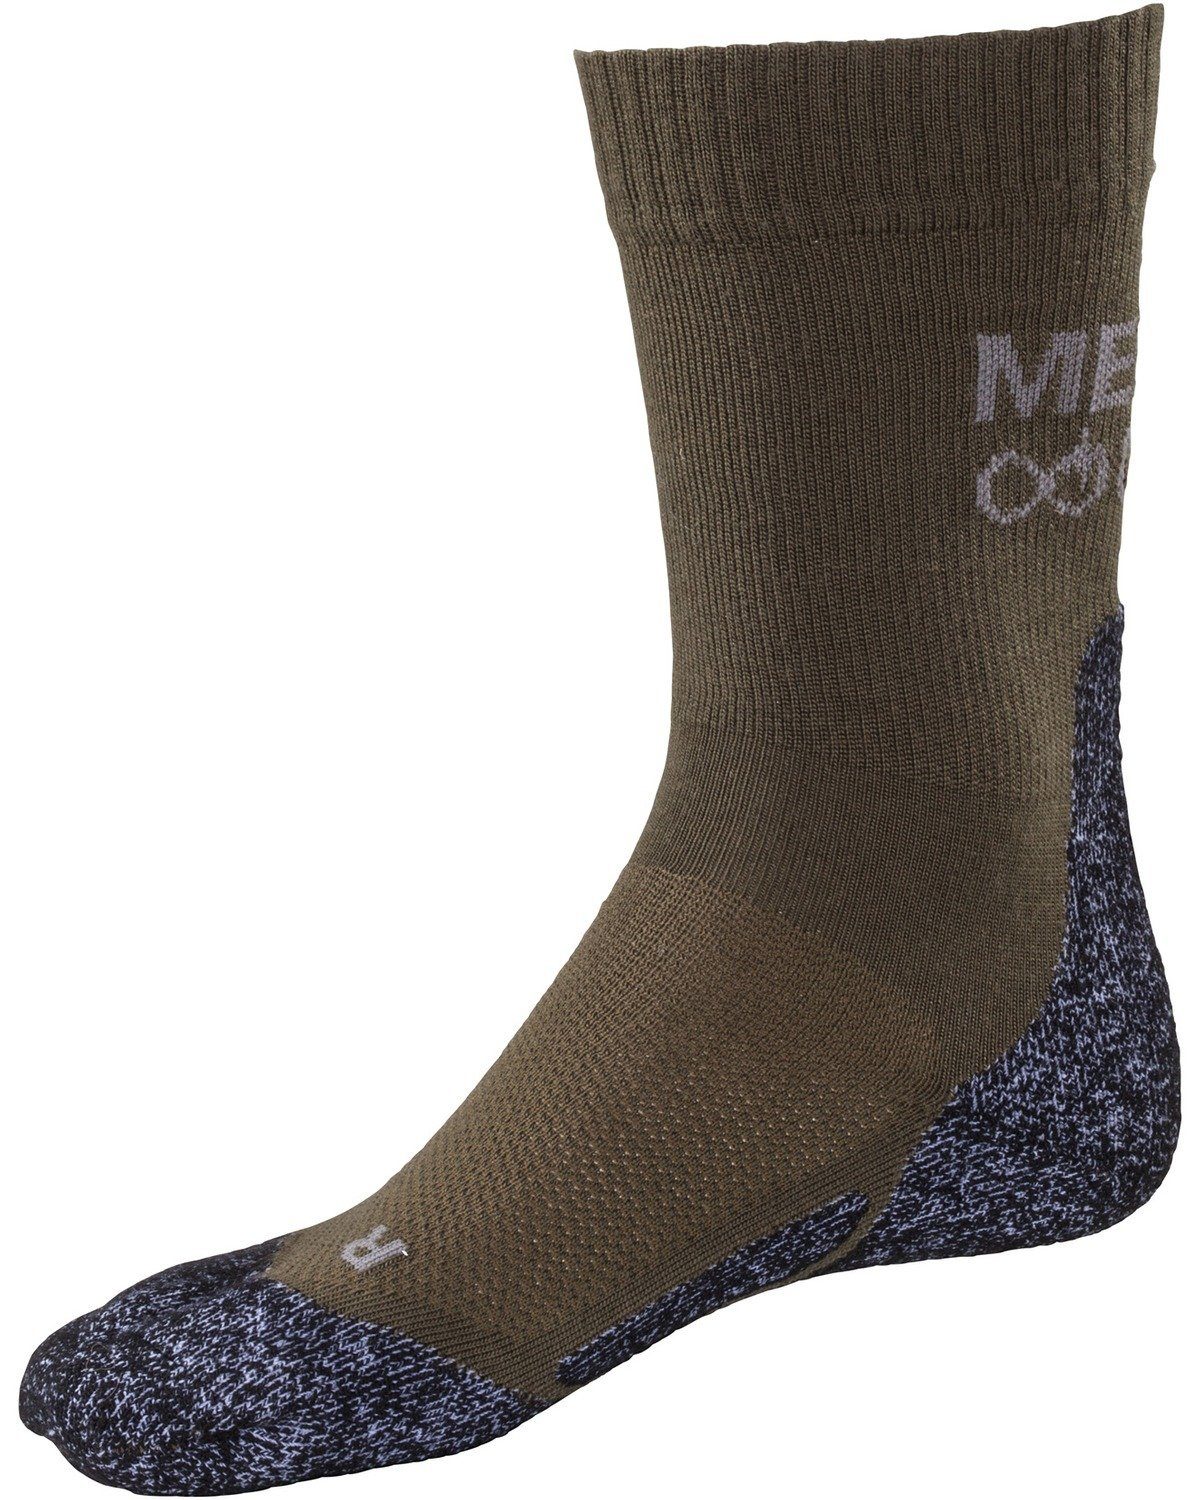 Merino Gear Socks short Socken Merkel